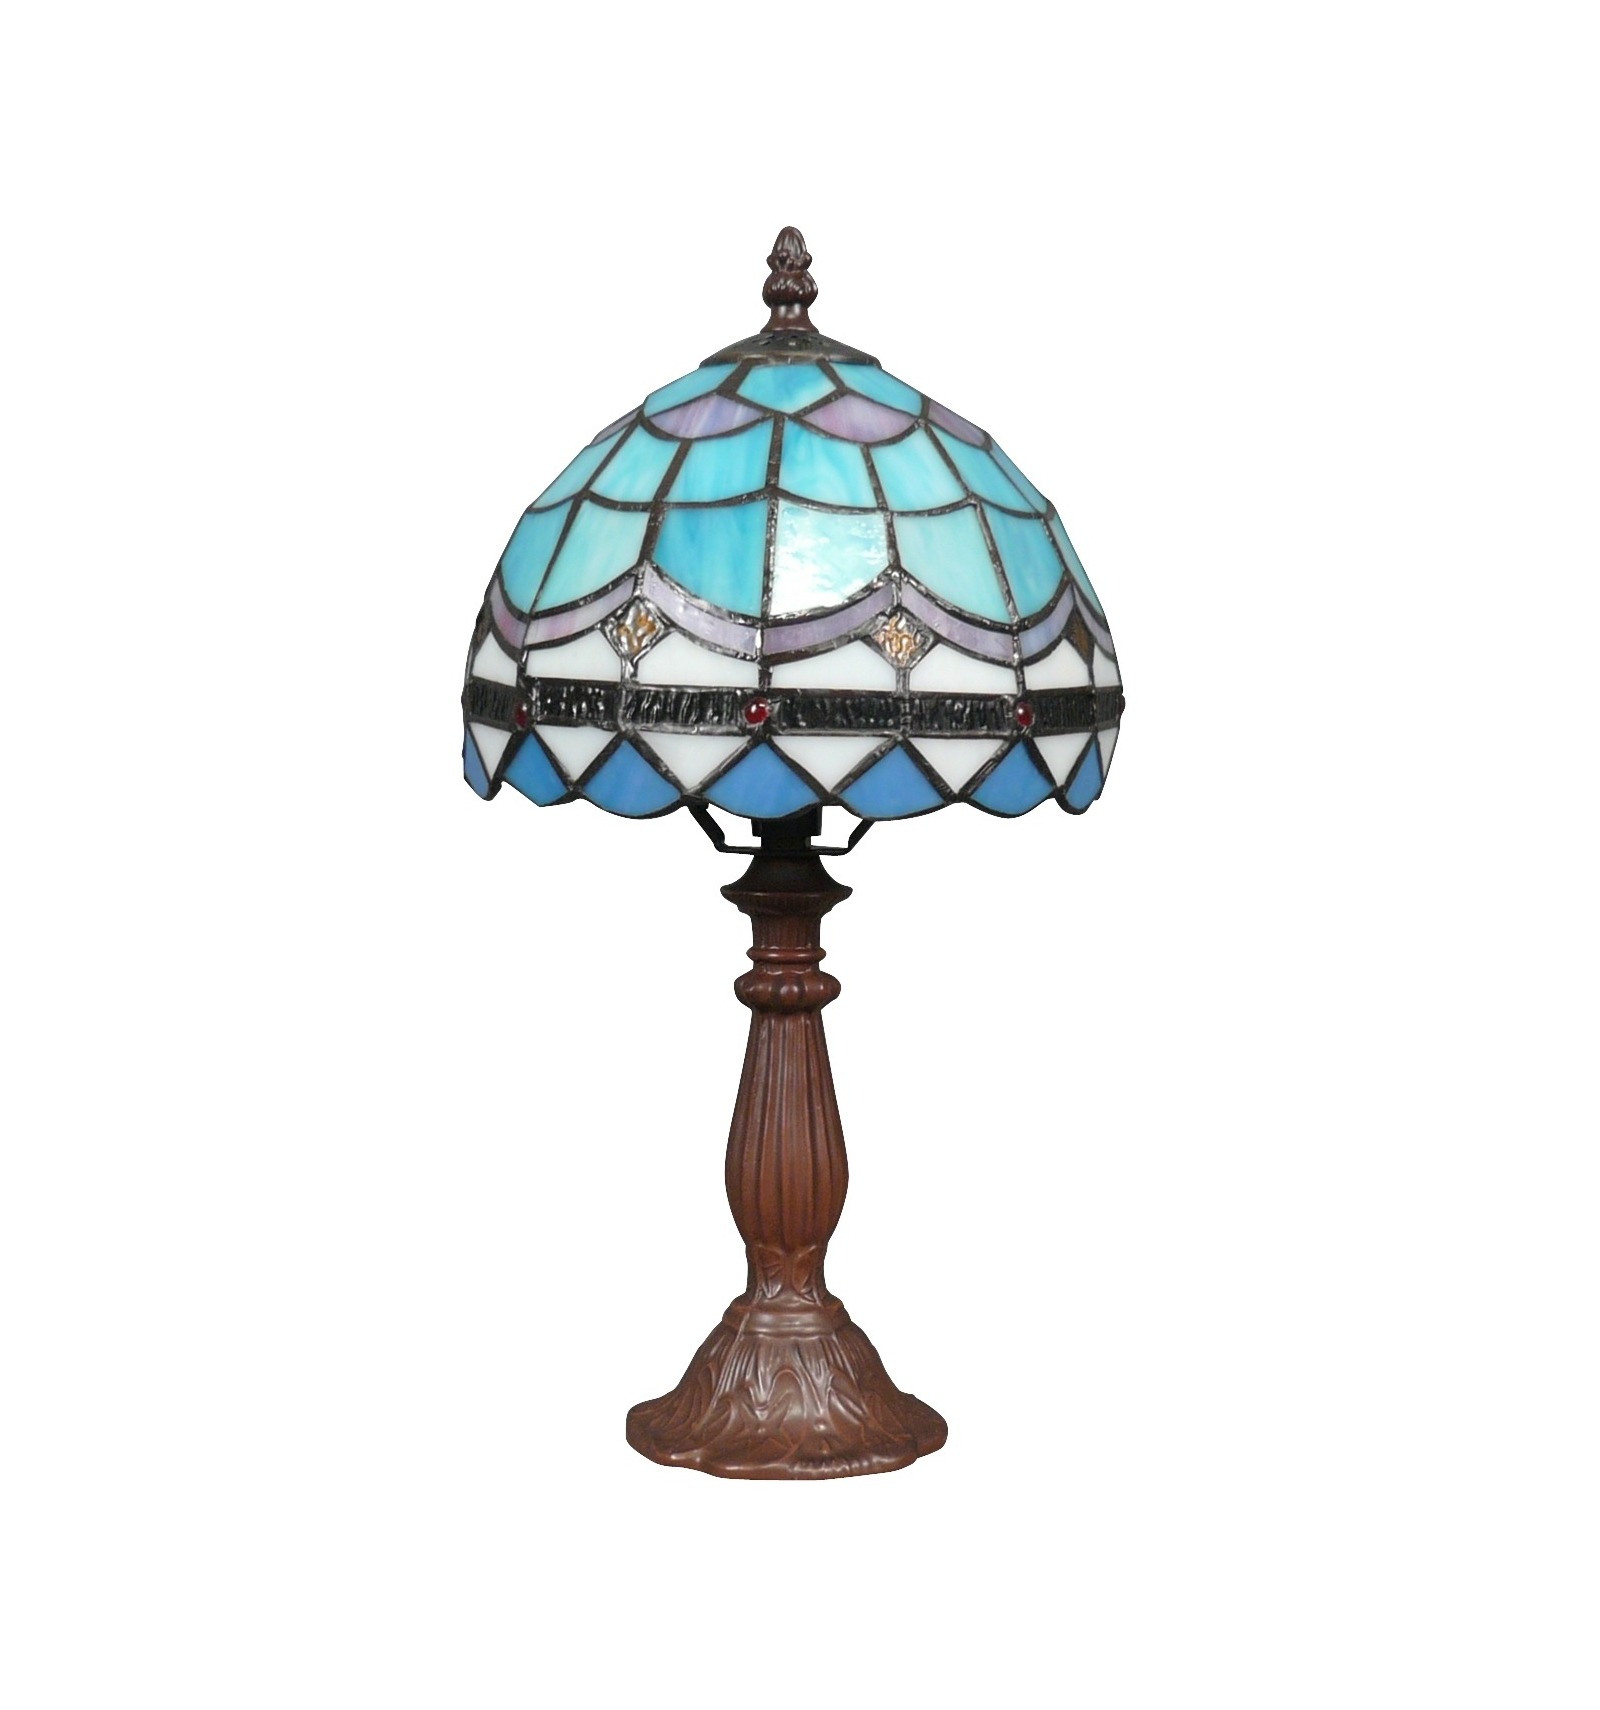 Tiffany Lampe mit blauem und weißem Buntglas
